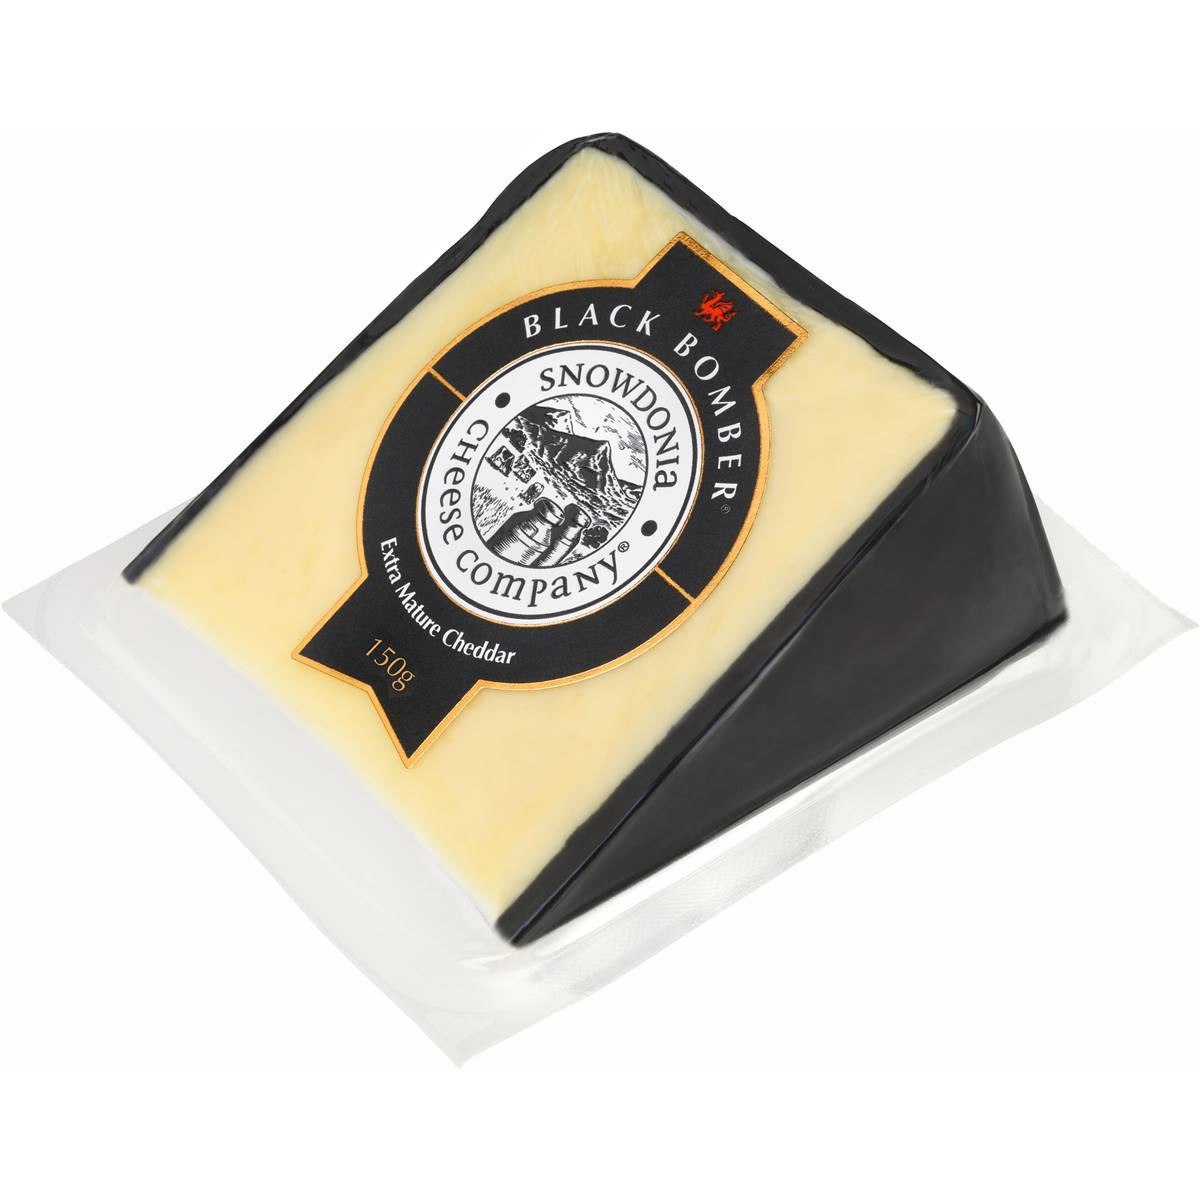 Snowdonia Black Bomber Cheese 150gm